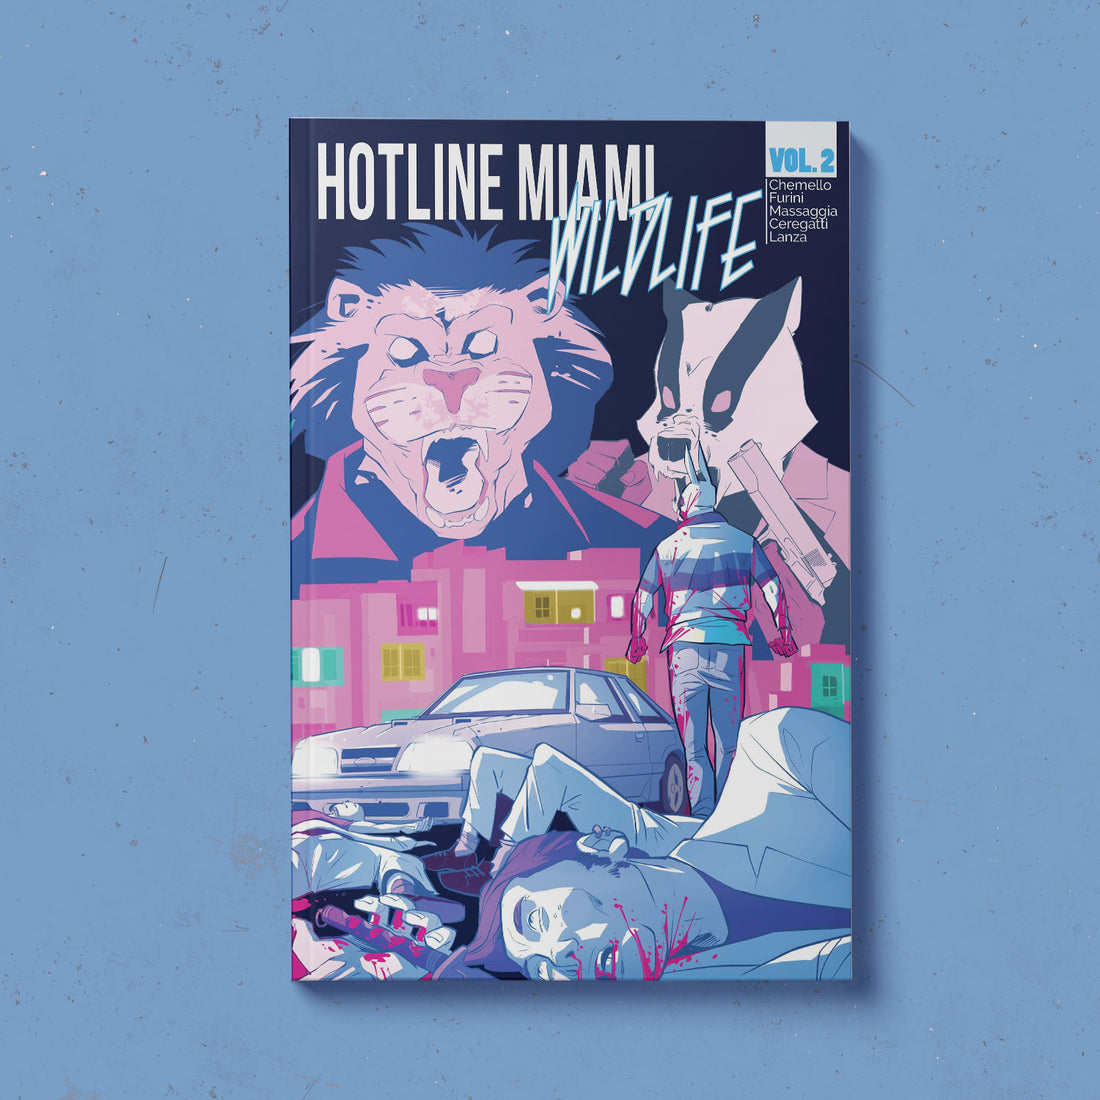 Hotline Miami: Wildlife Vol. 2